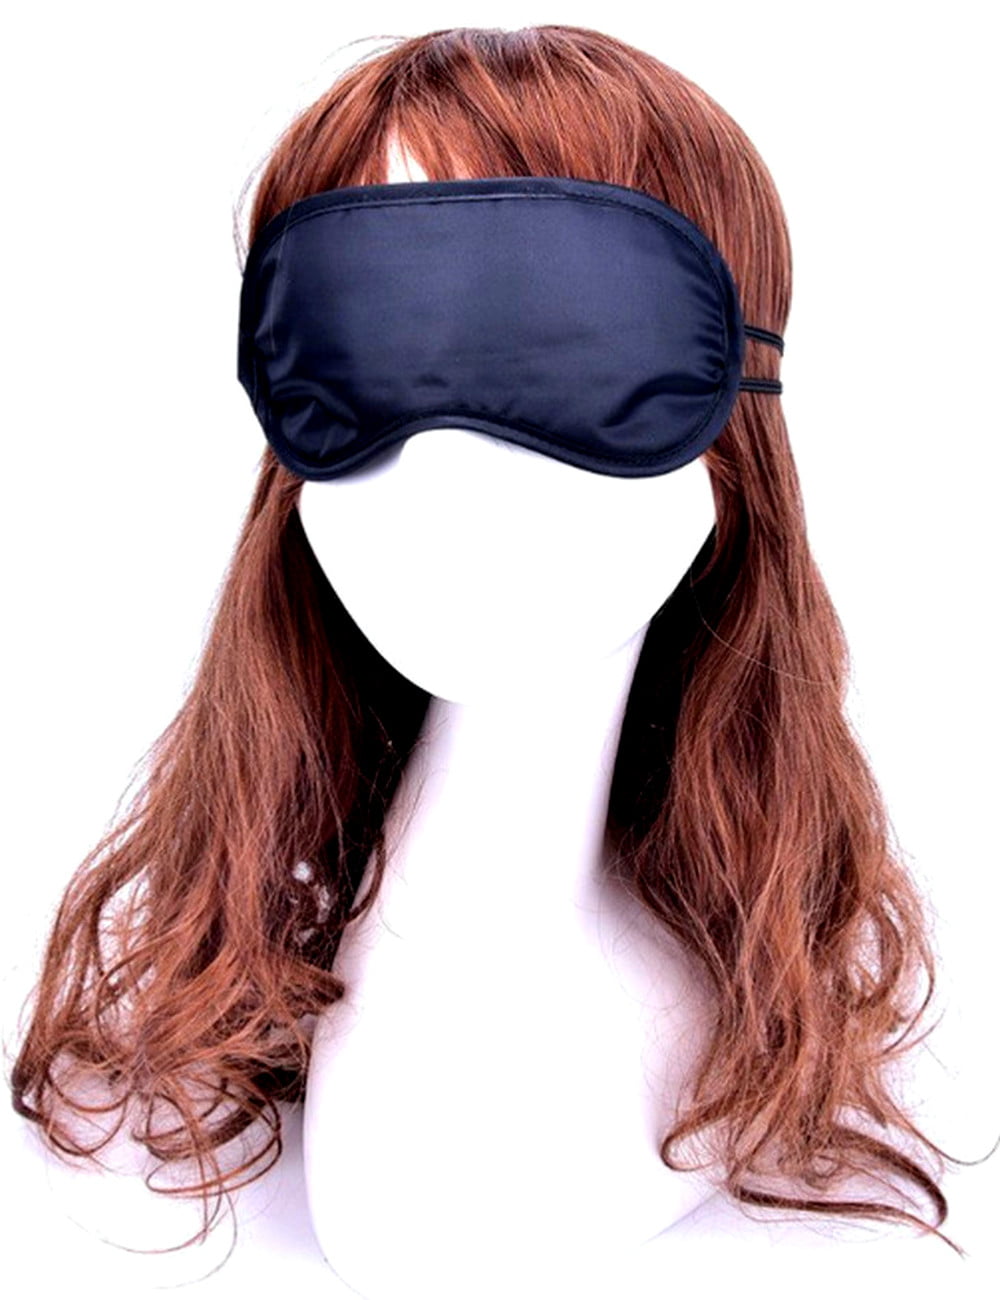 XTEES Blindfolds Sleeping Mask Blackout Blindfold Sleep Mask for